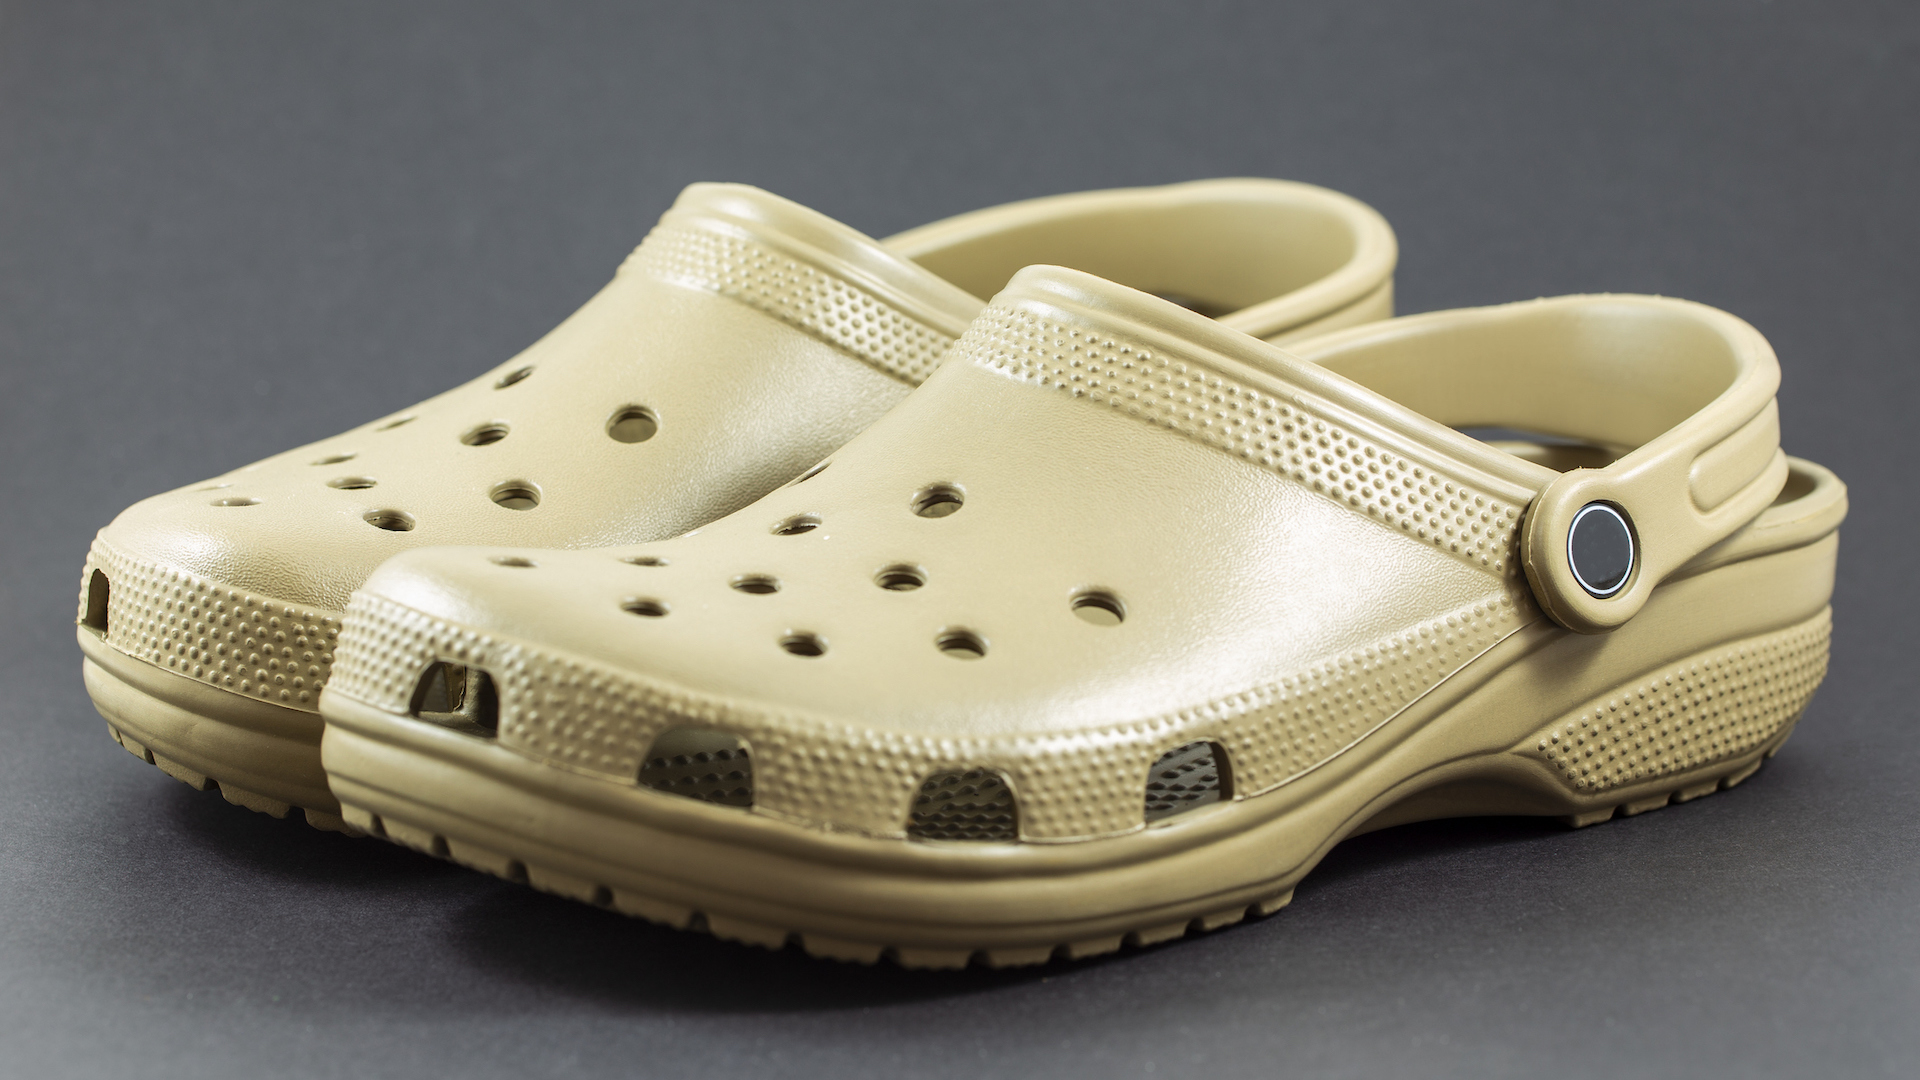 A pair of beige Crocs